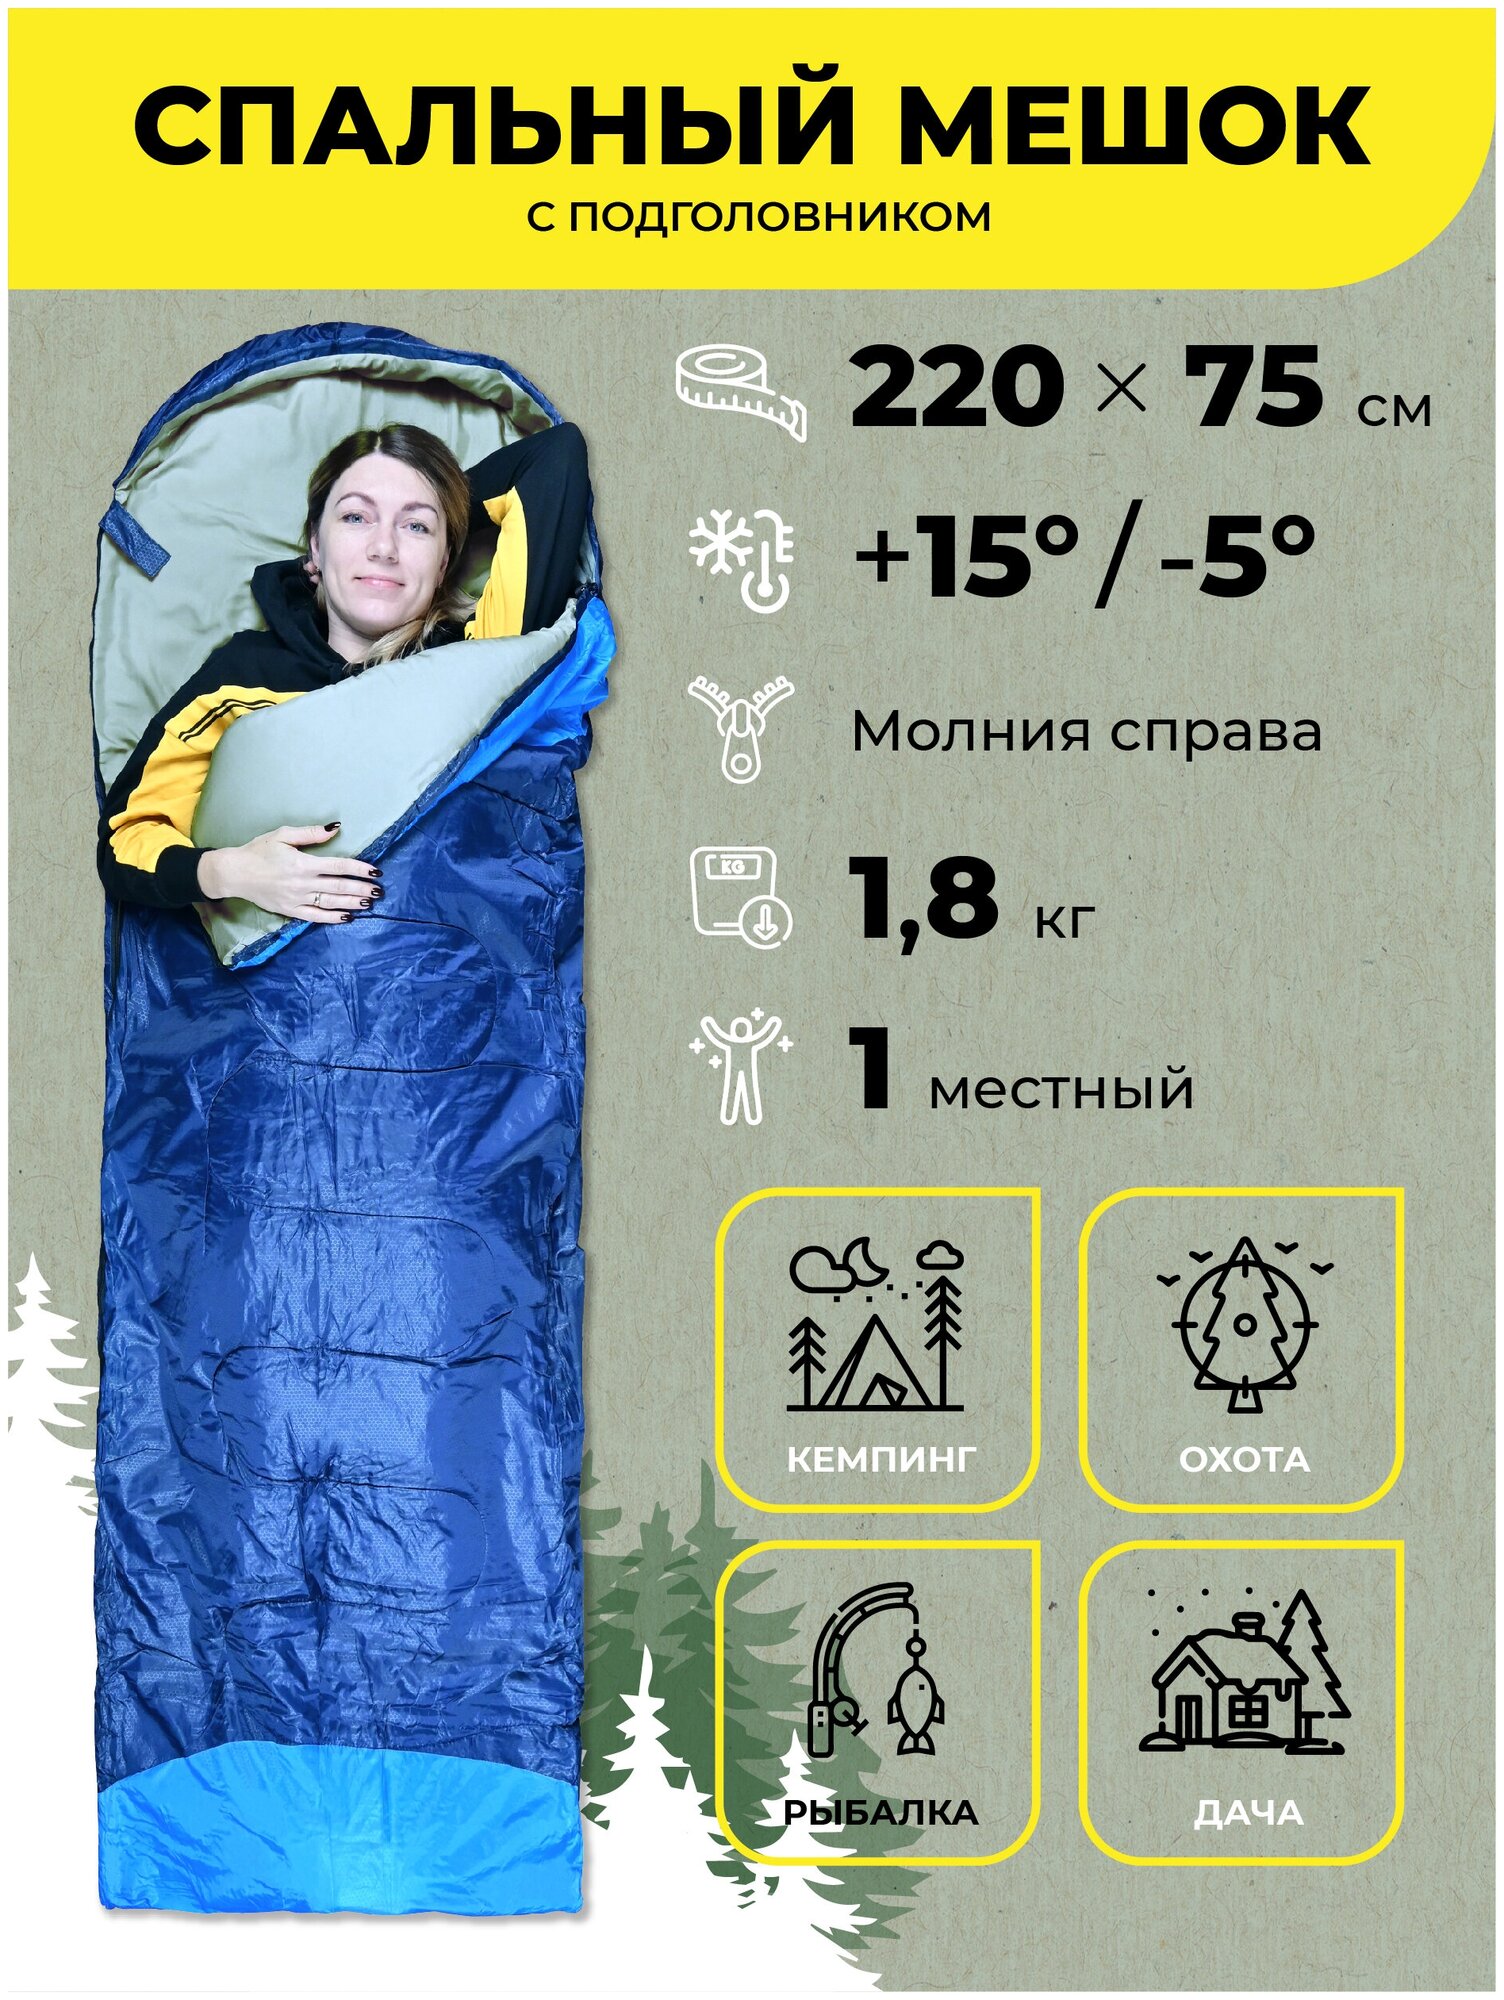 Водонепроницаемый спальный мешок демисезонный AT6101 (правый) 1,8 кг 190х75 см с подголовником 30 см синий / Одинарный спальник туристический